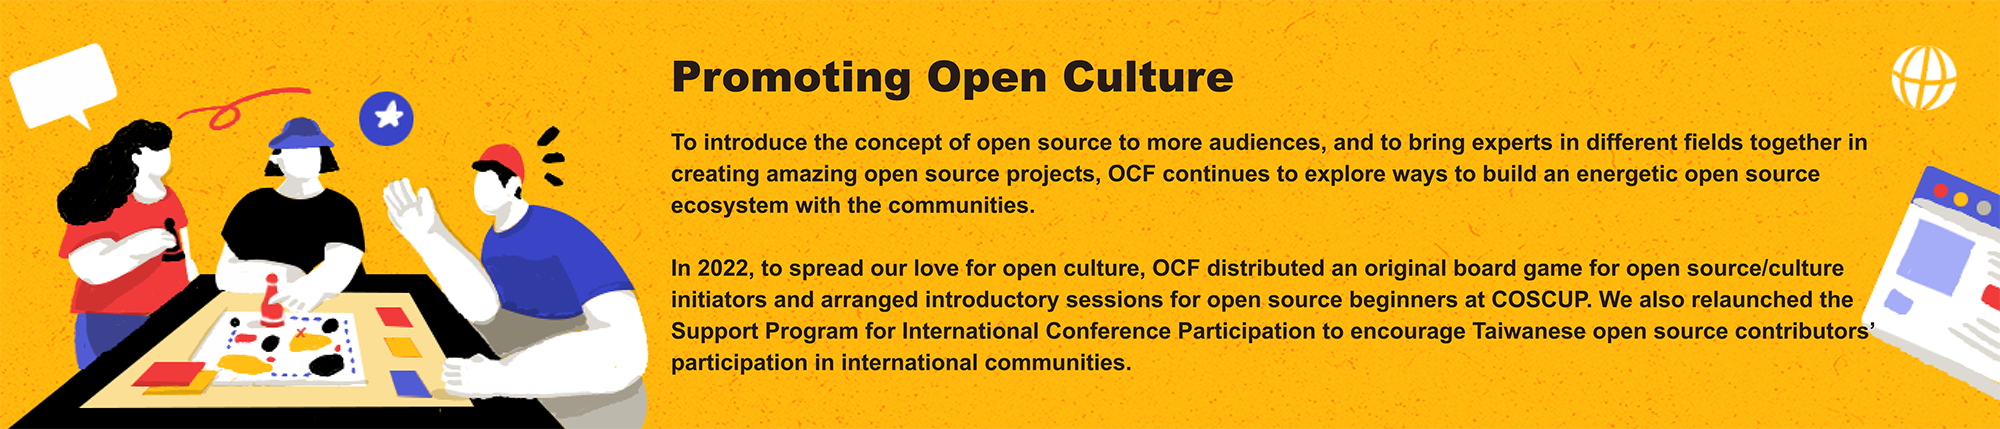 open culture promotion